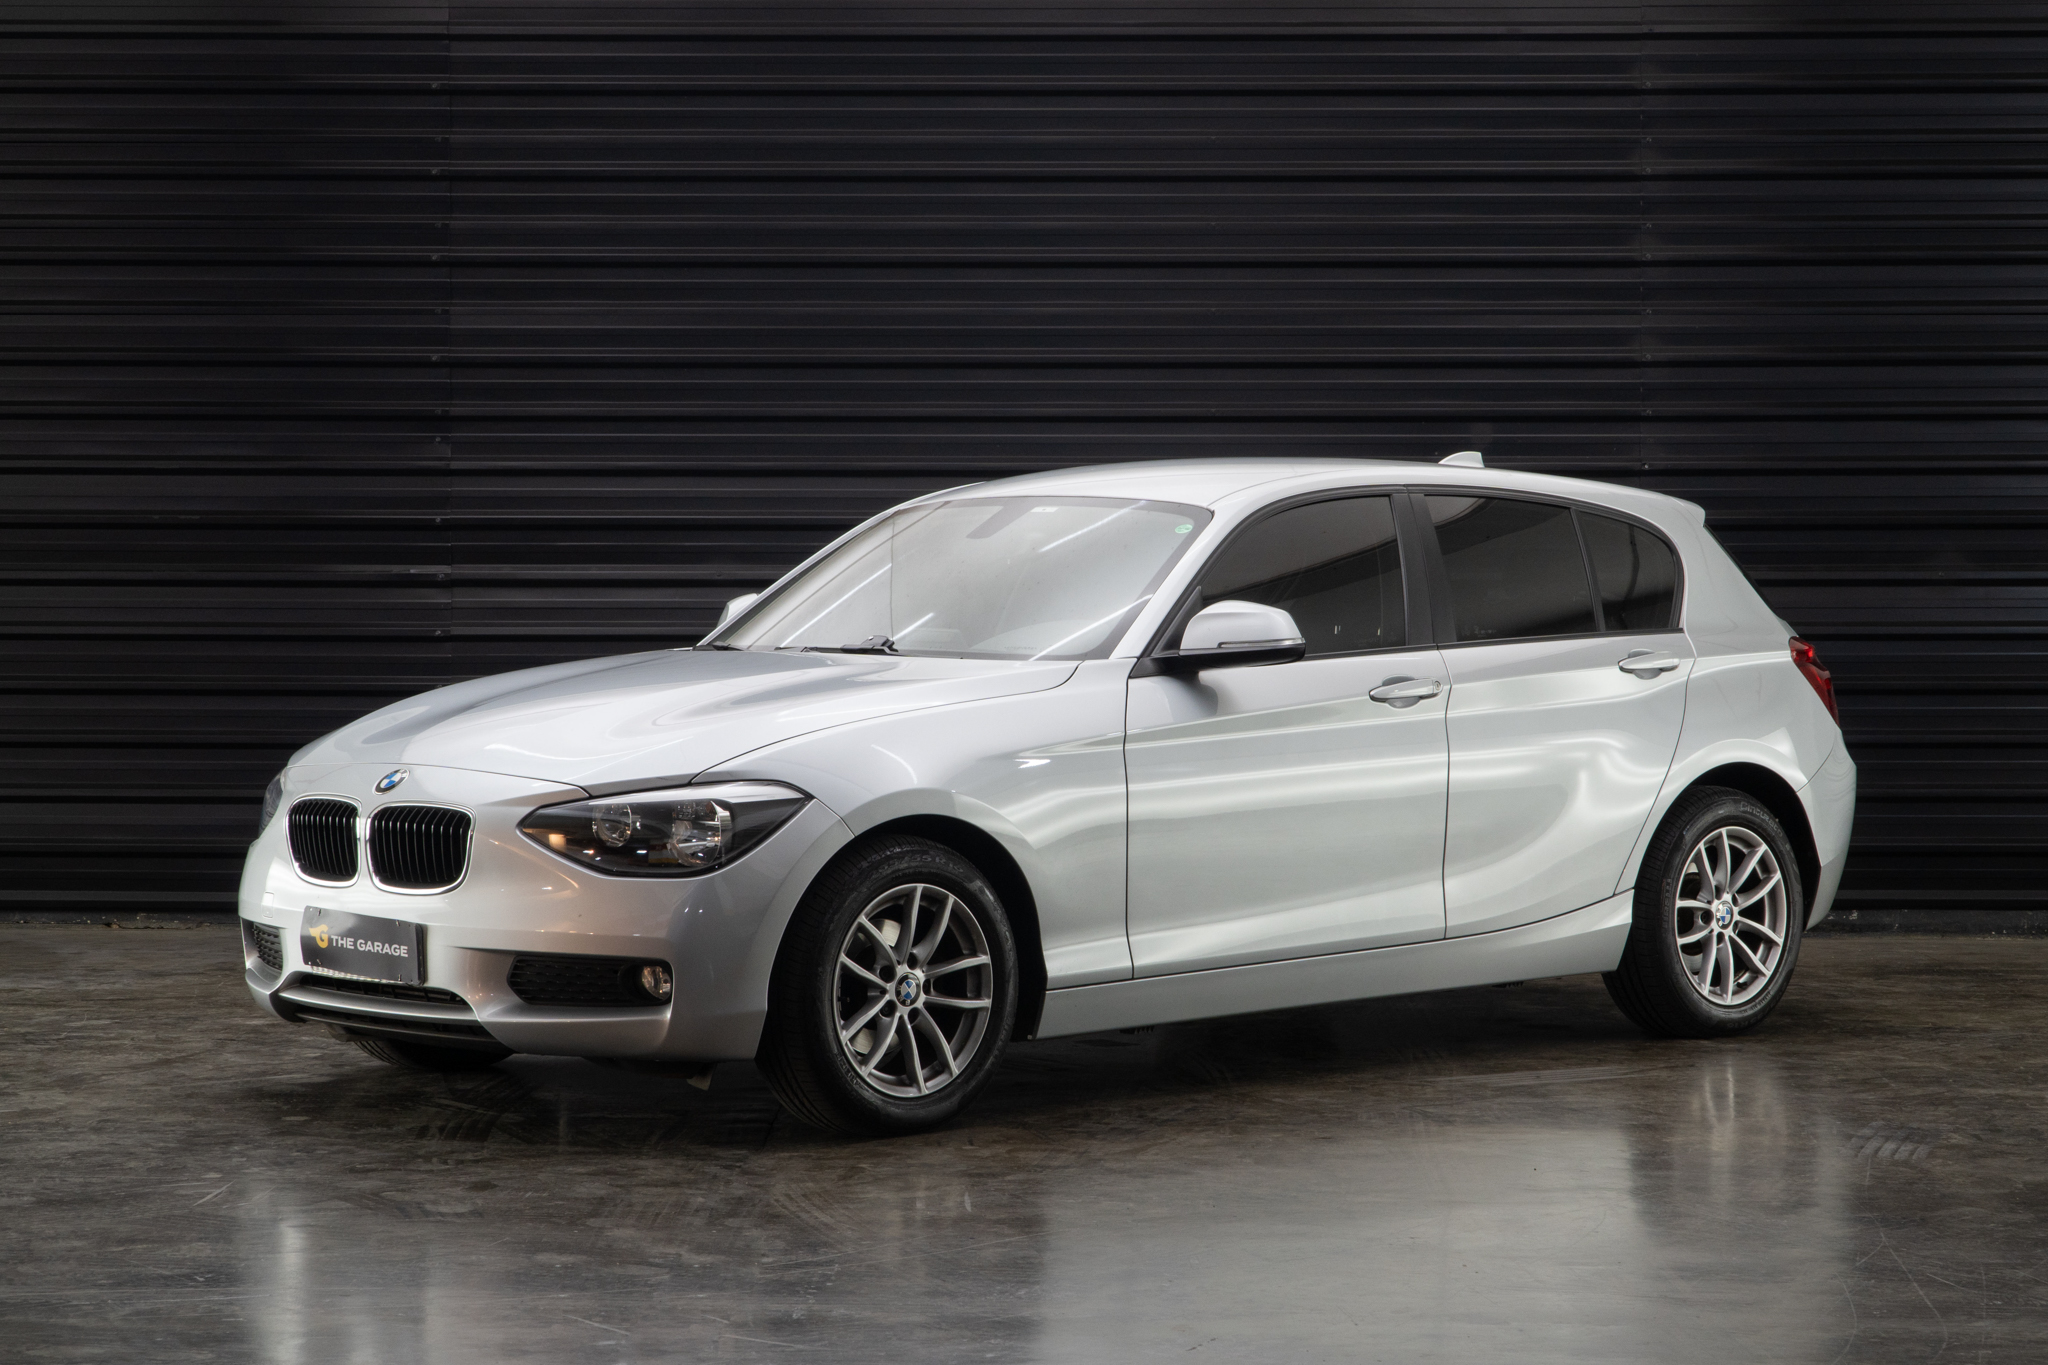 2014 BMW 116i a venda the garage for sale